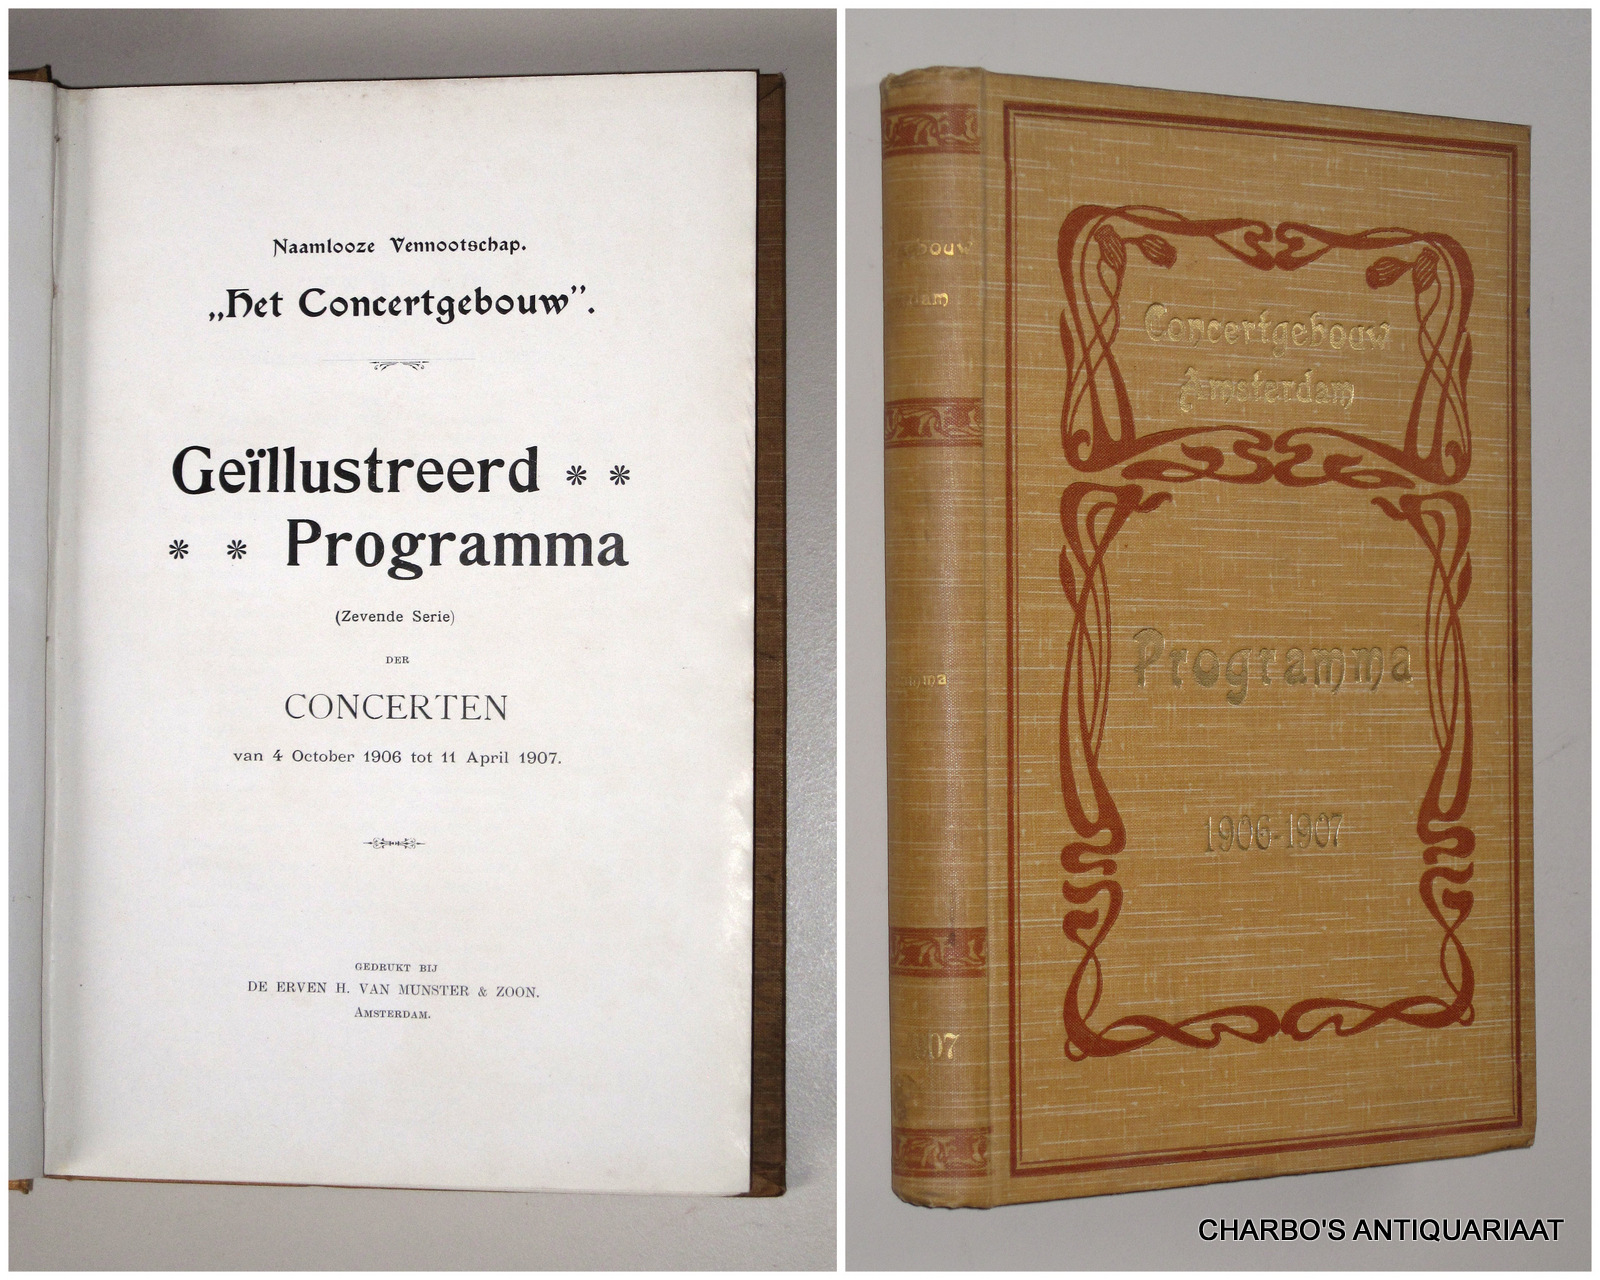 CONCERTGEBOUW, NAAMLOOZE VENNOOTSCHAP HET, -  Gellustreerd programma (zevende serie) der concerten van 4 October 1906 tot 11 April 1907.